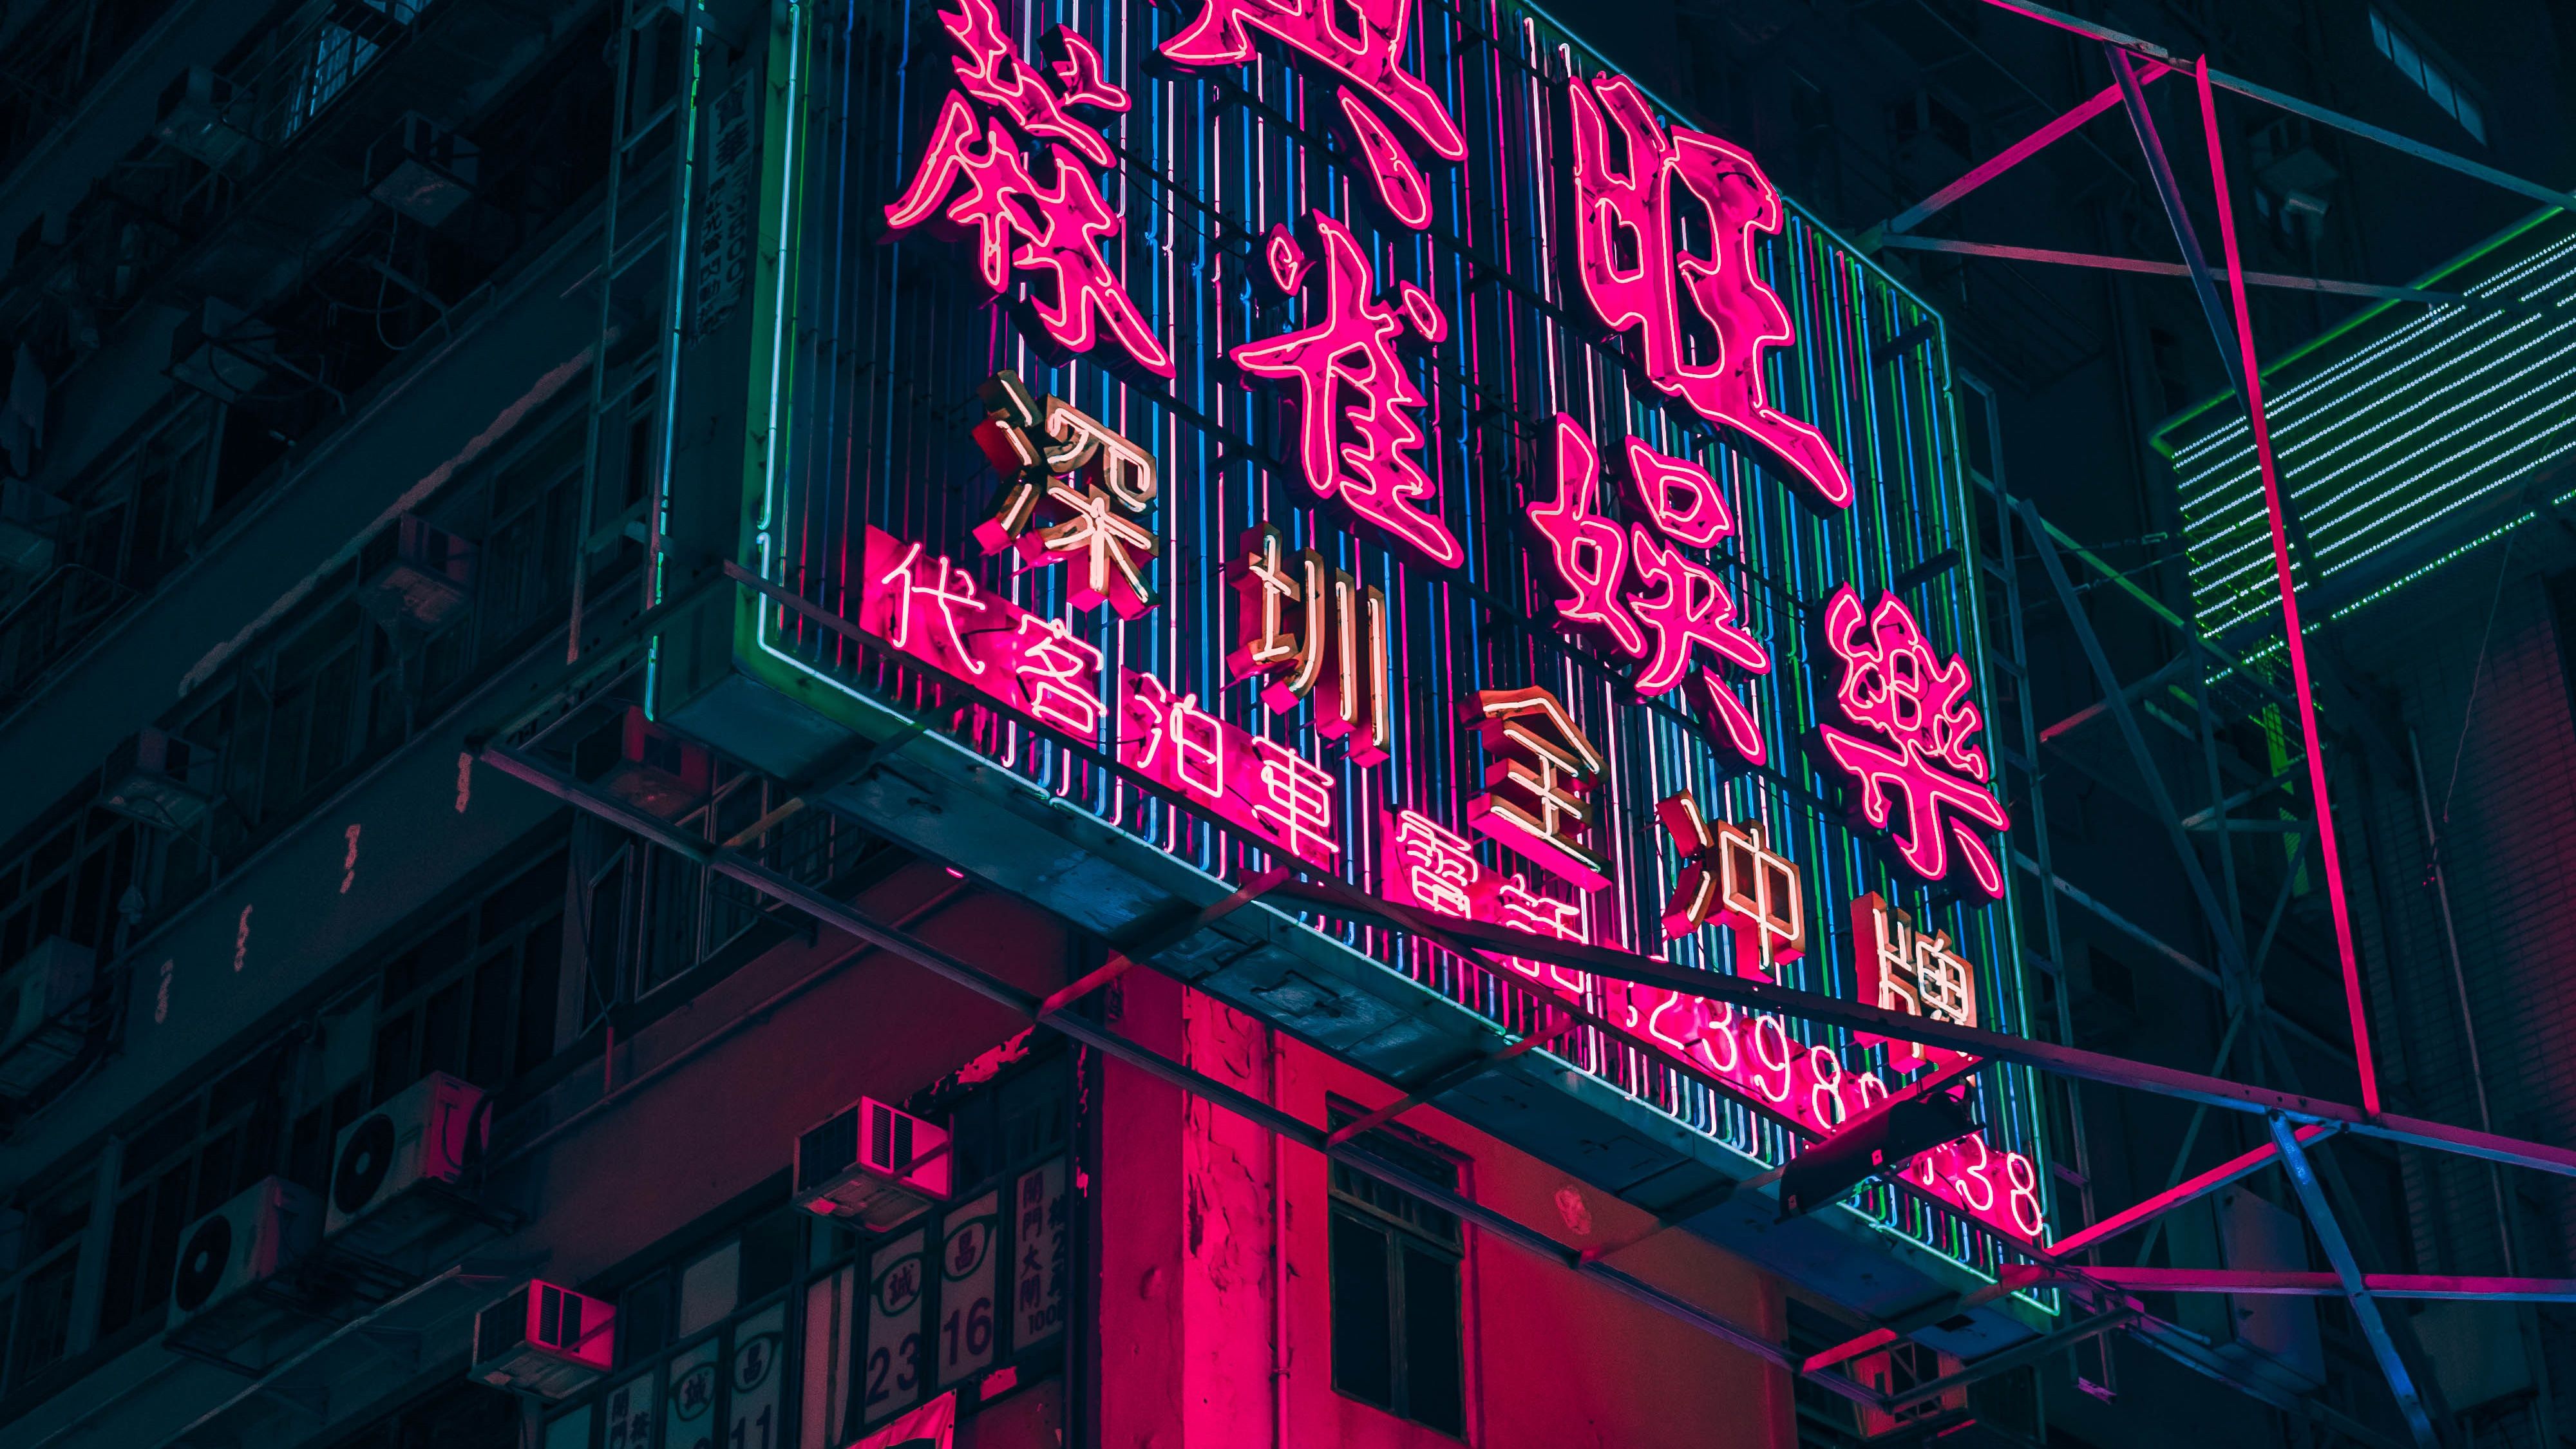 Hình nền đèn neon Hồng Kông sẽ mang lại cho bạn trải nghiệm đầy kỳ diệu và bất ngờ. Với những cảnh quan đẹp mê hồn được tạo ra bởi những cây đèn neon sáng rực, bạn sẽ tìm thấy sự thoải mái và ngưỡng mộ không ngừng. 